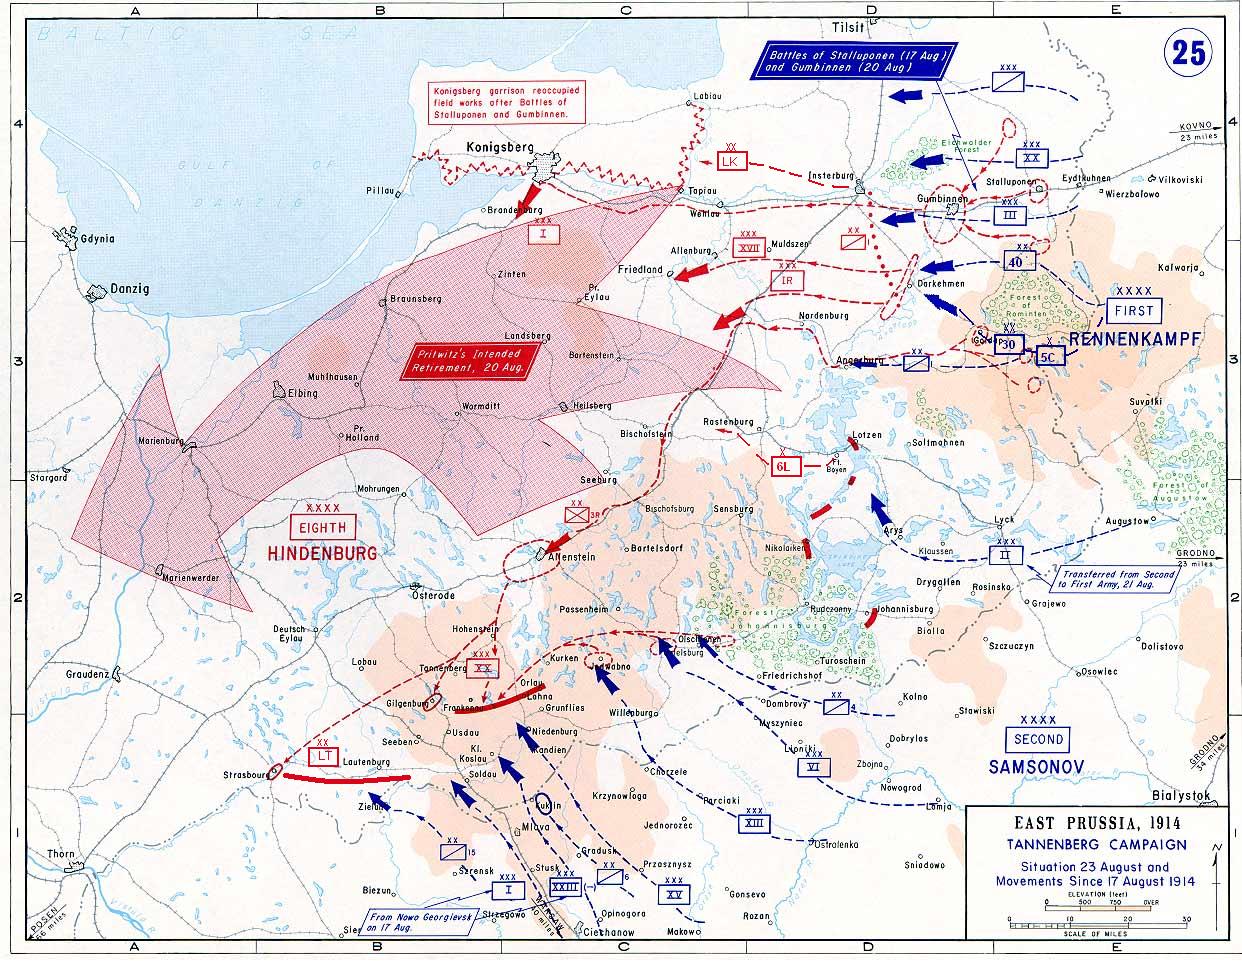 Схема развертывания сил Северо-западного фронта и схема начального этапа Восточно-Прусской операции в 1914 г